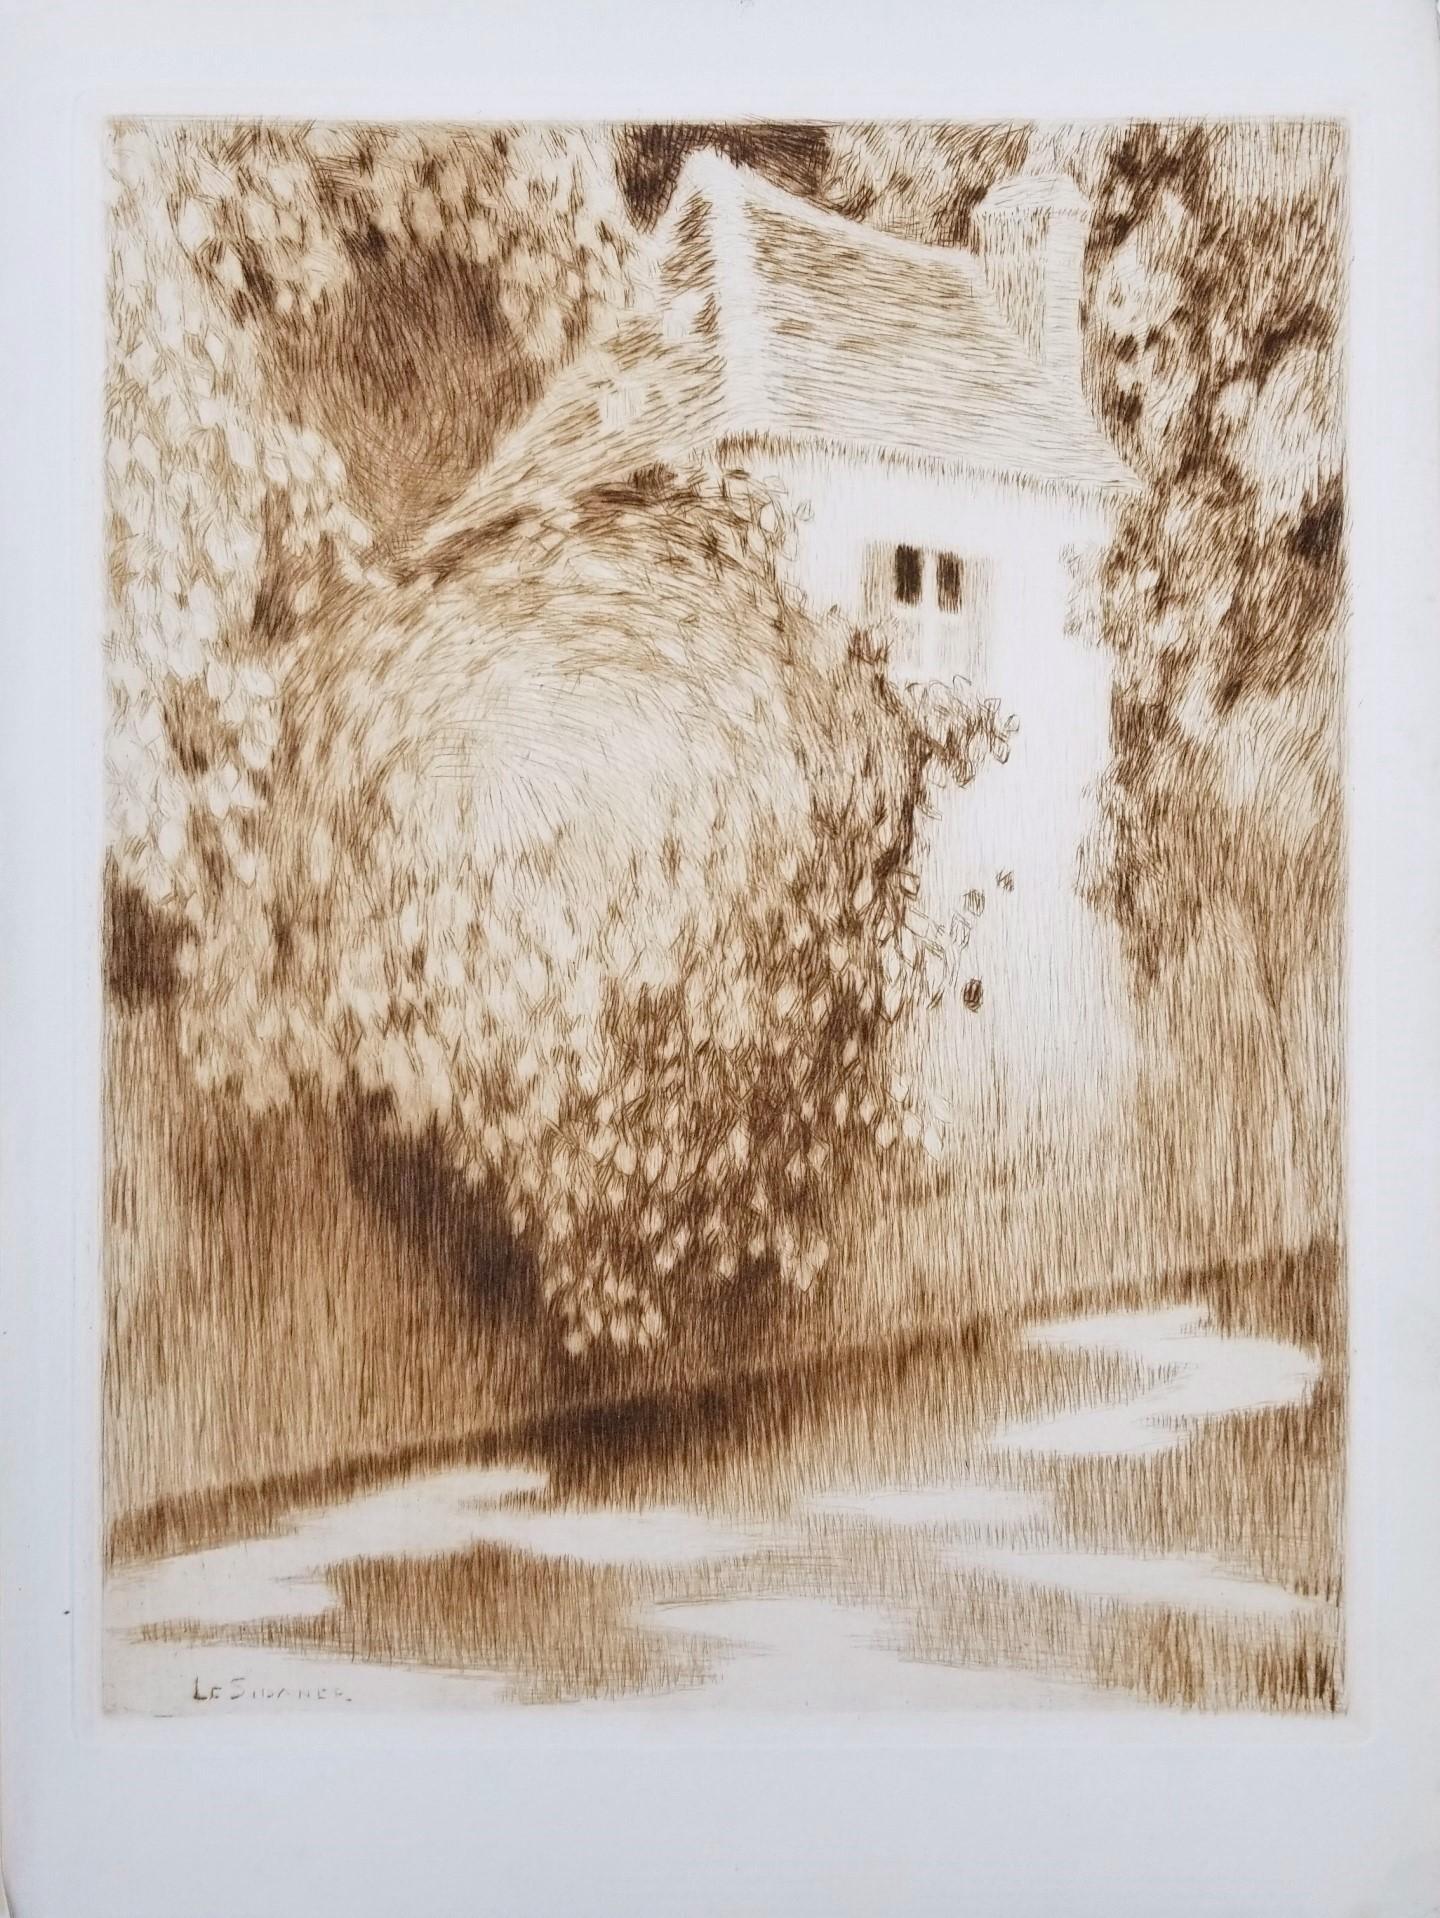 Pavillon dans les Arbres (Pavilion in the Trees) /// Impressionist Henri Sidaner - Print by Henri Le Sidaner